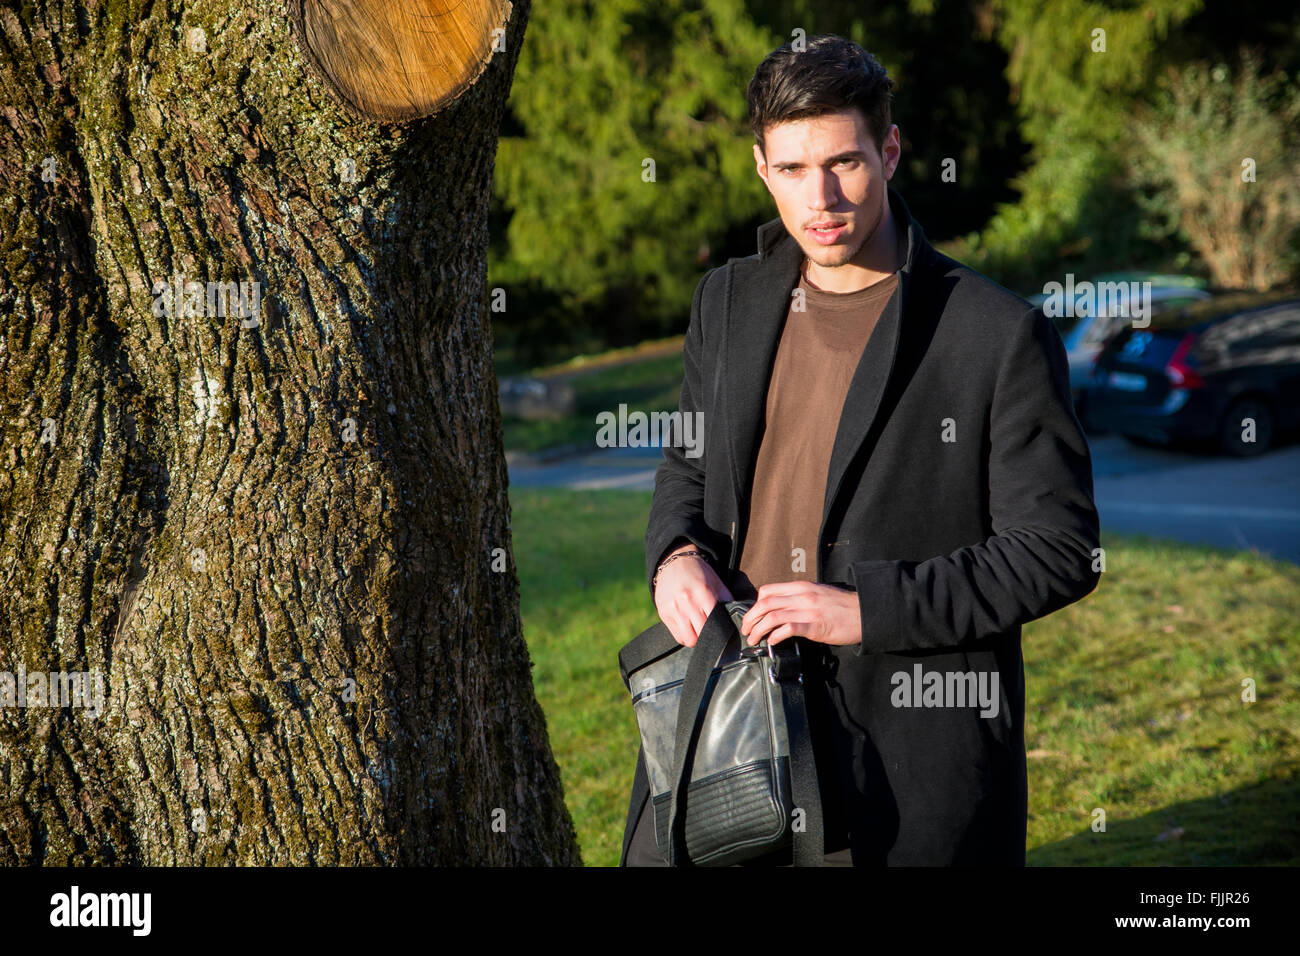 Bel giovane uomo appoggiato contro l'albero, guardando la telecamera, in una giornata di sole che indossa un mantello nero Foto Stock